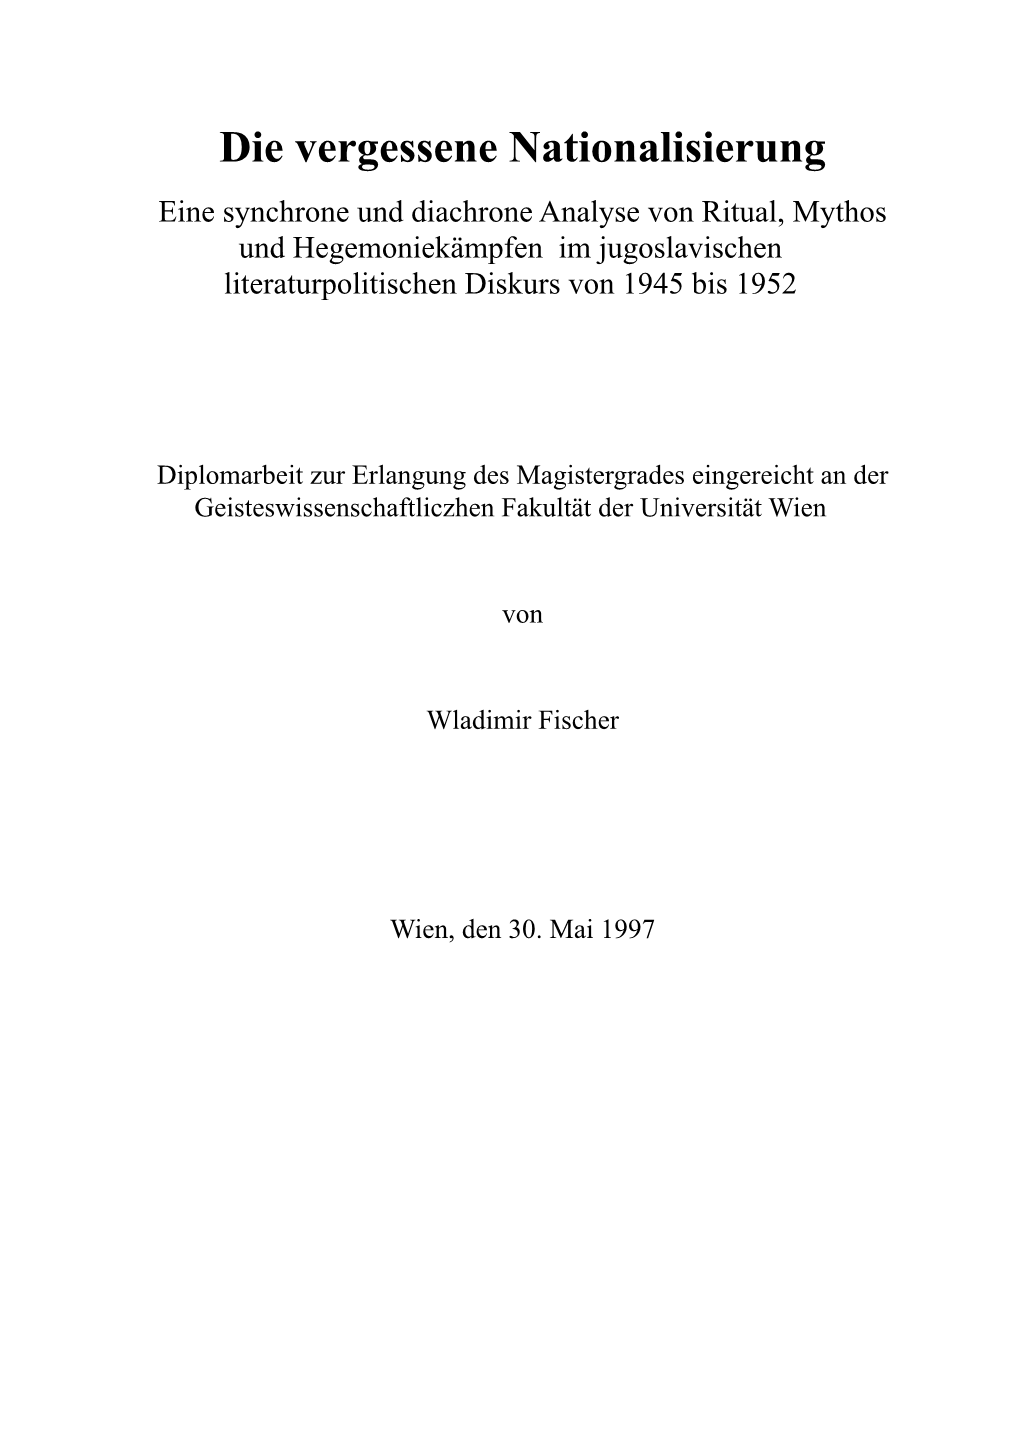 Eine Synchrone Und Diachrone Analyse Von Ritual, Mythos Und Hegemoniekämpfen Im Jugoslavischen Literaturpolitischen Diskurs Von 1945 Bis 1952